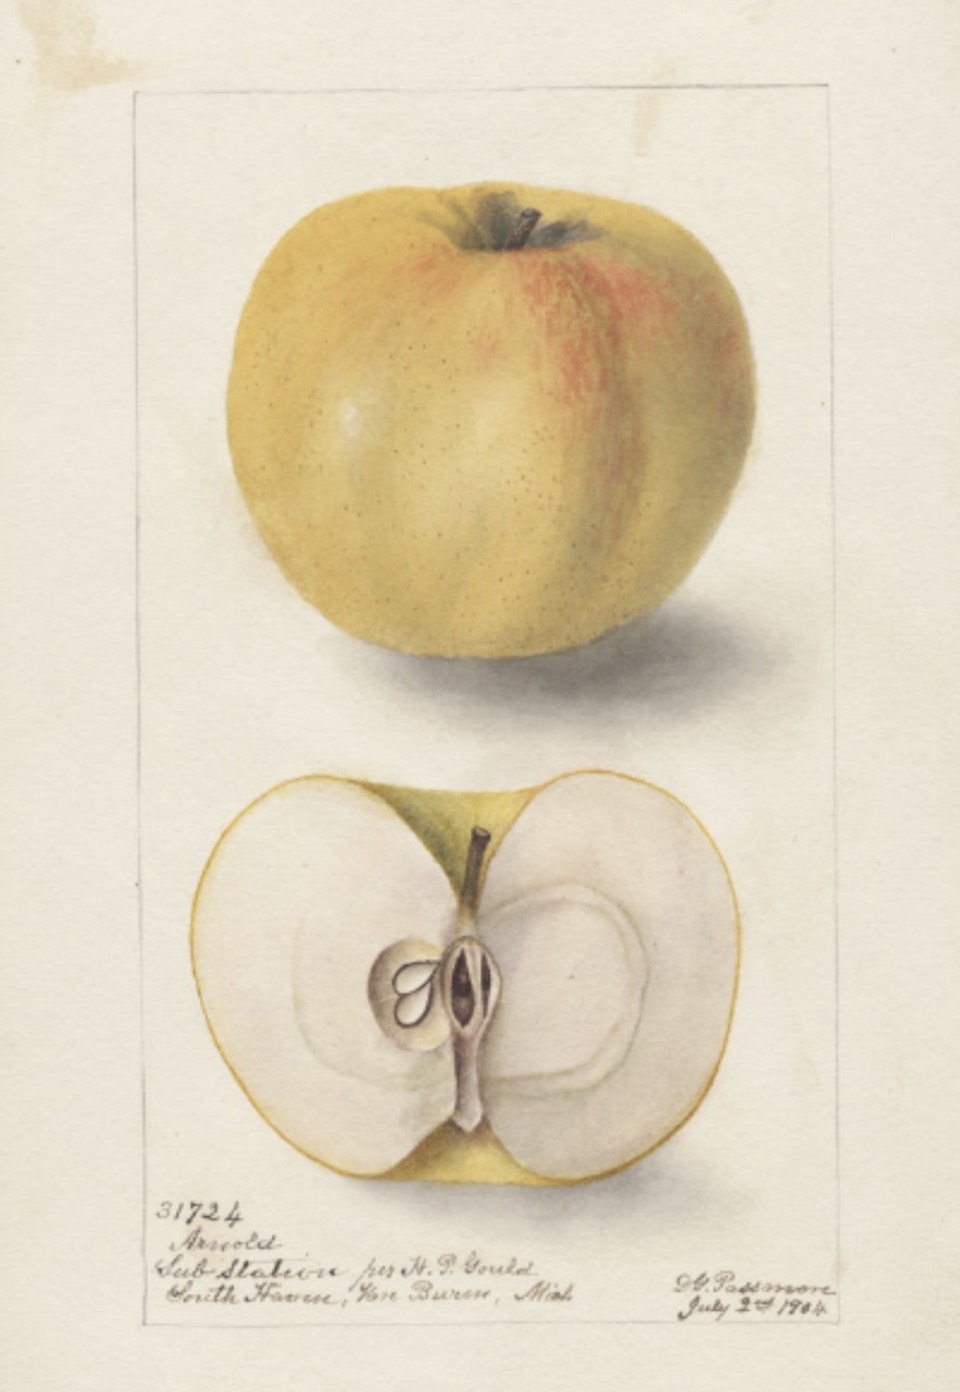 Historische Abbildung eines gelb-rötlichen und eines aufgeschnittenen Apfels; USDA